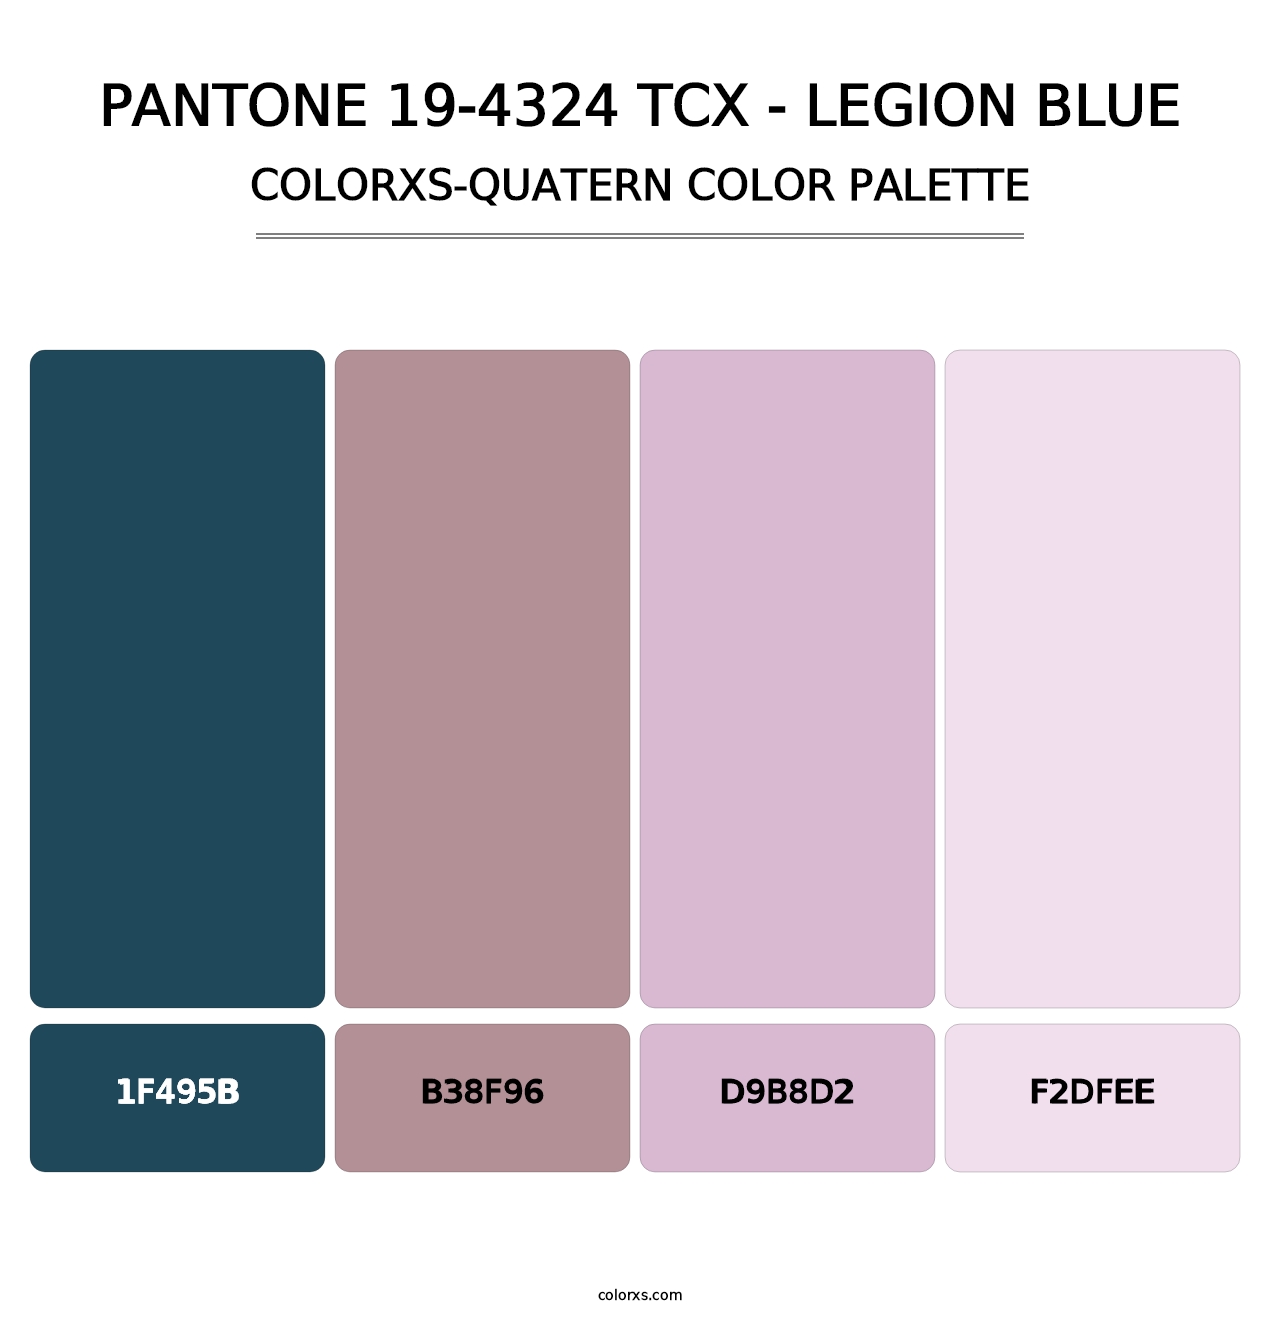 PANTONE 19-4324 TCX - Legion Blue - Colorxs Quatern Palette